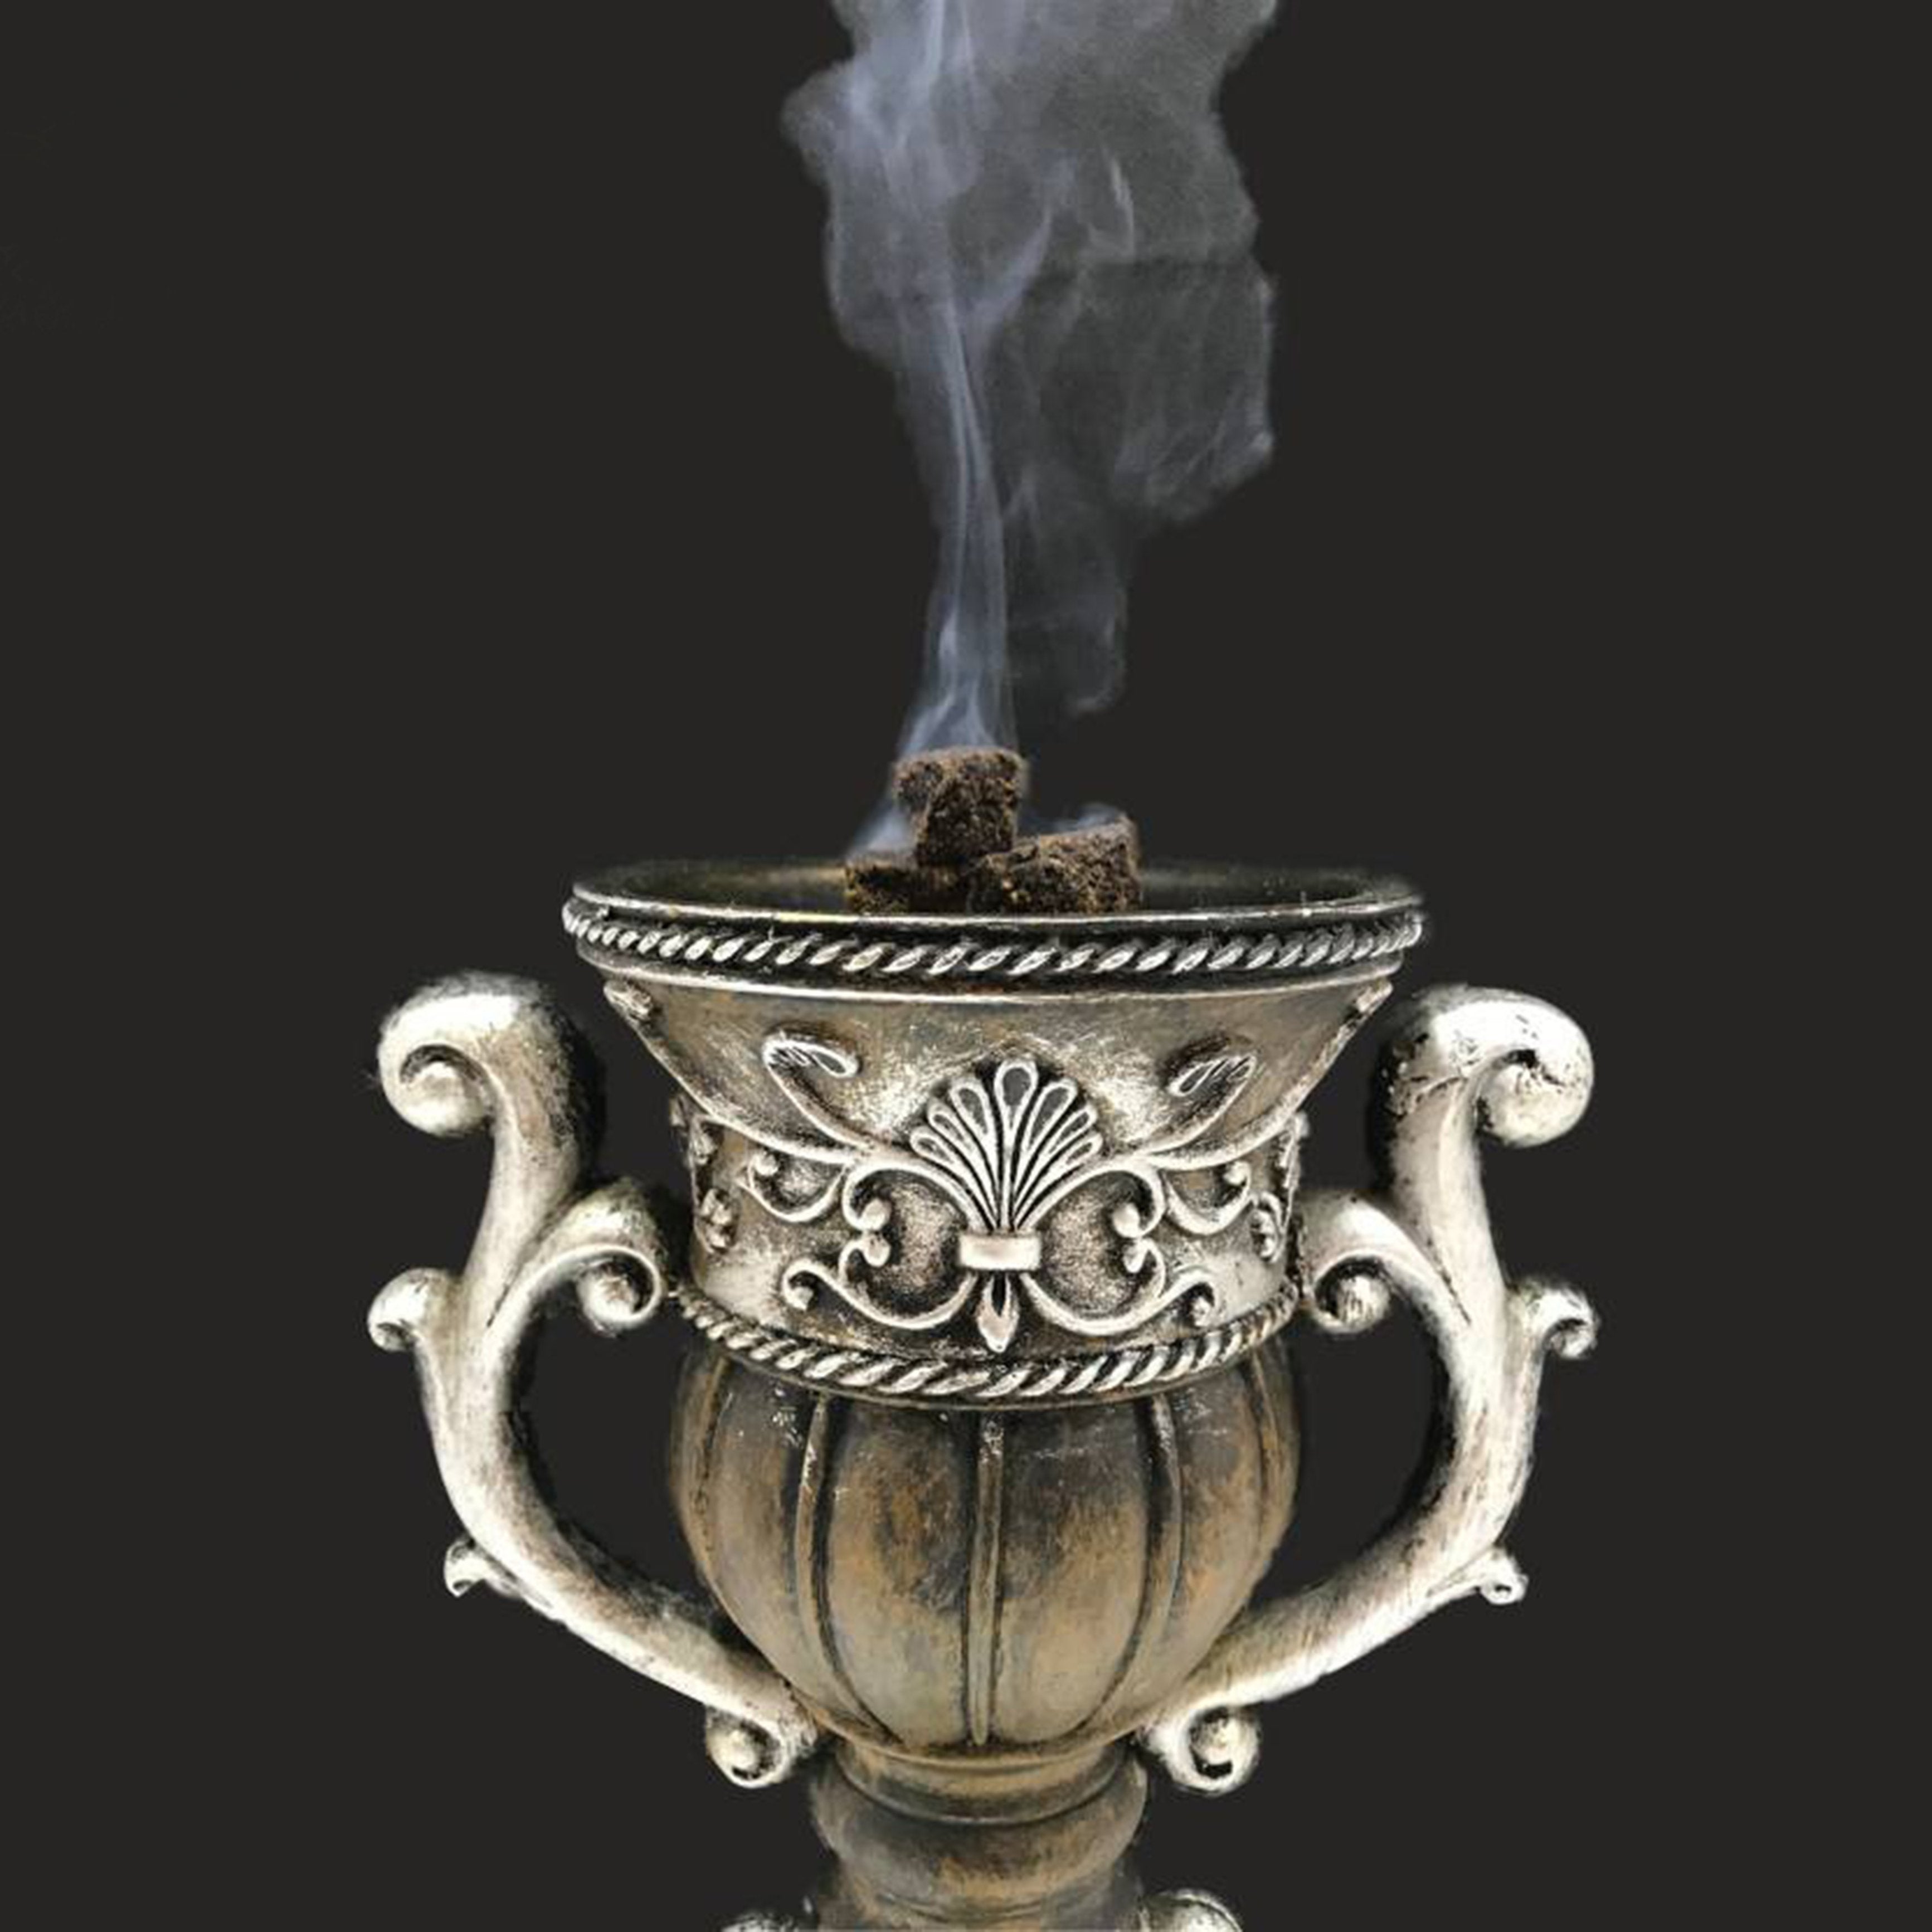 Electrical Bakhoor Burner & 50g Fragrance Paste Iron Incense Holder - Silver (Oud/BAKHOOR/LOBAAN)